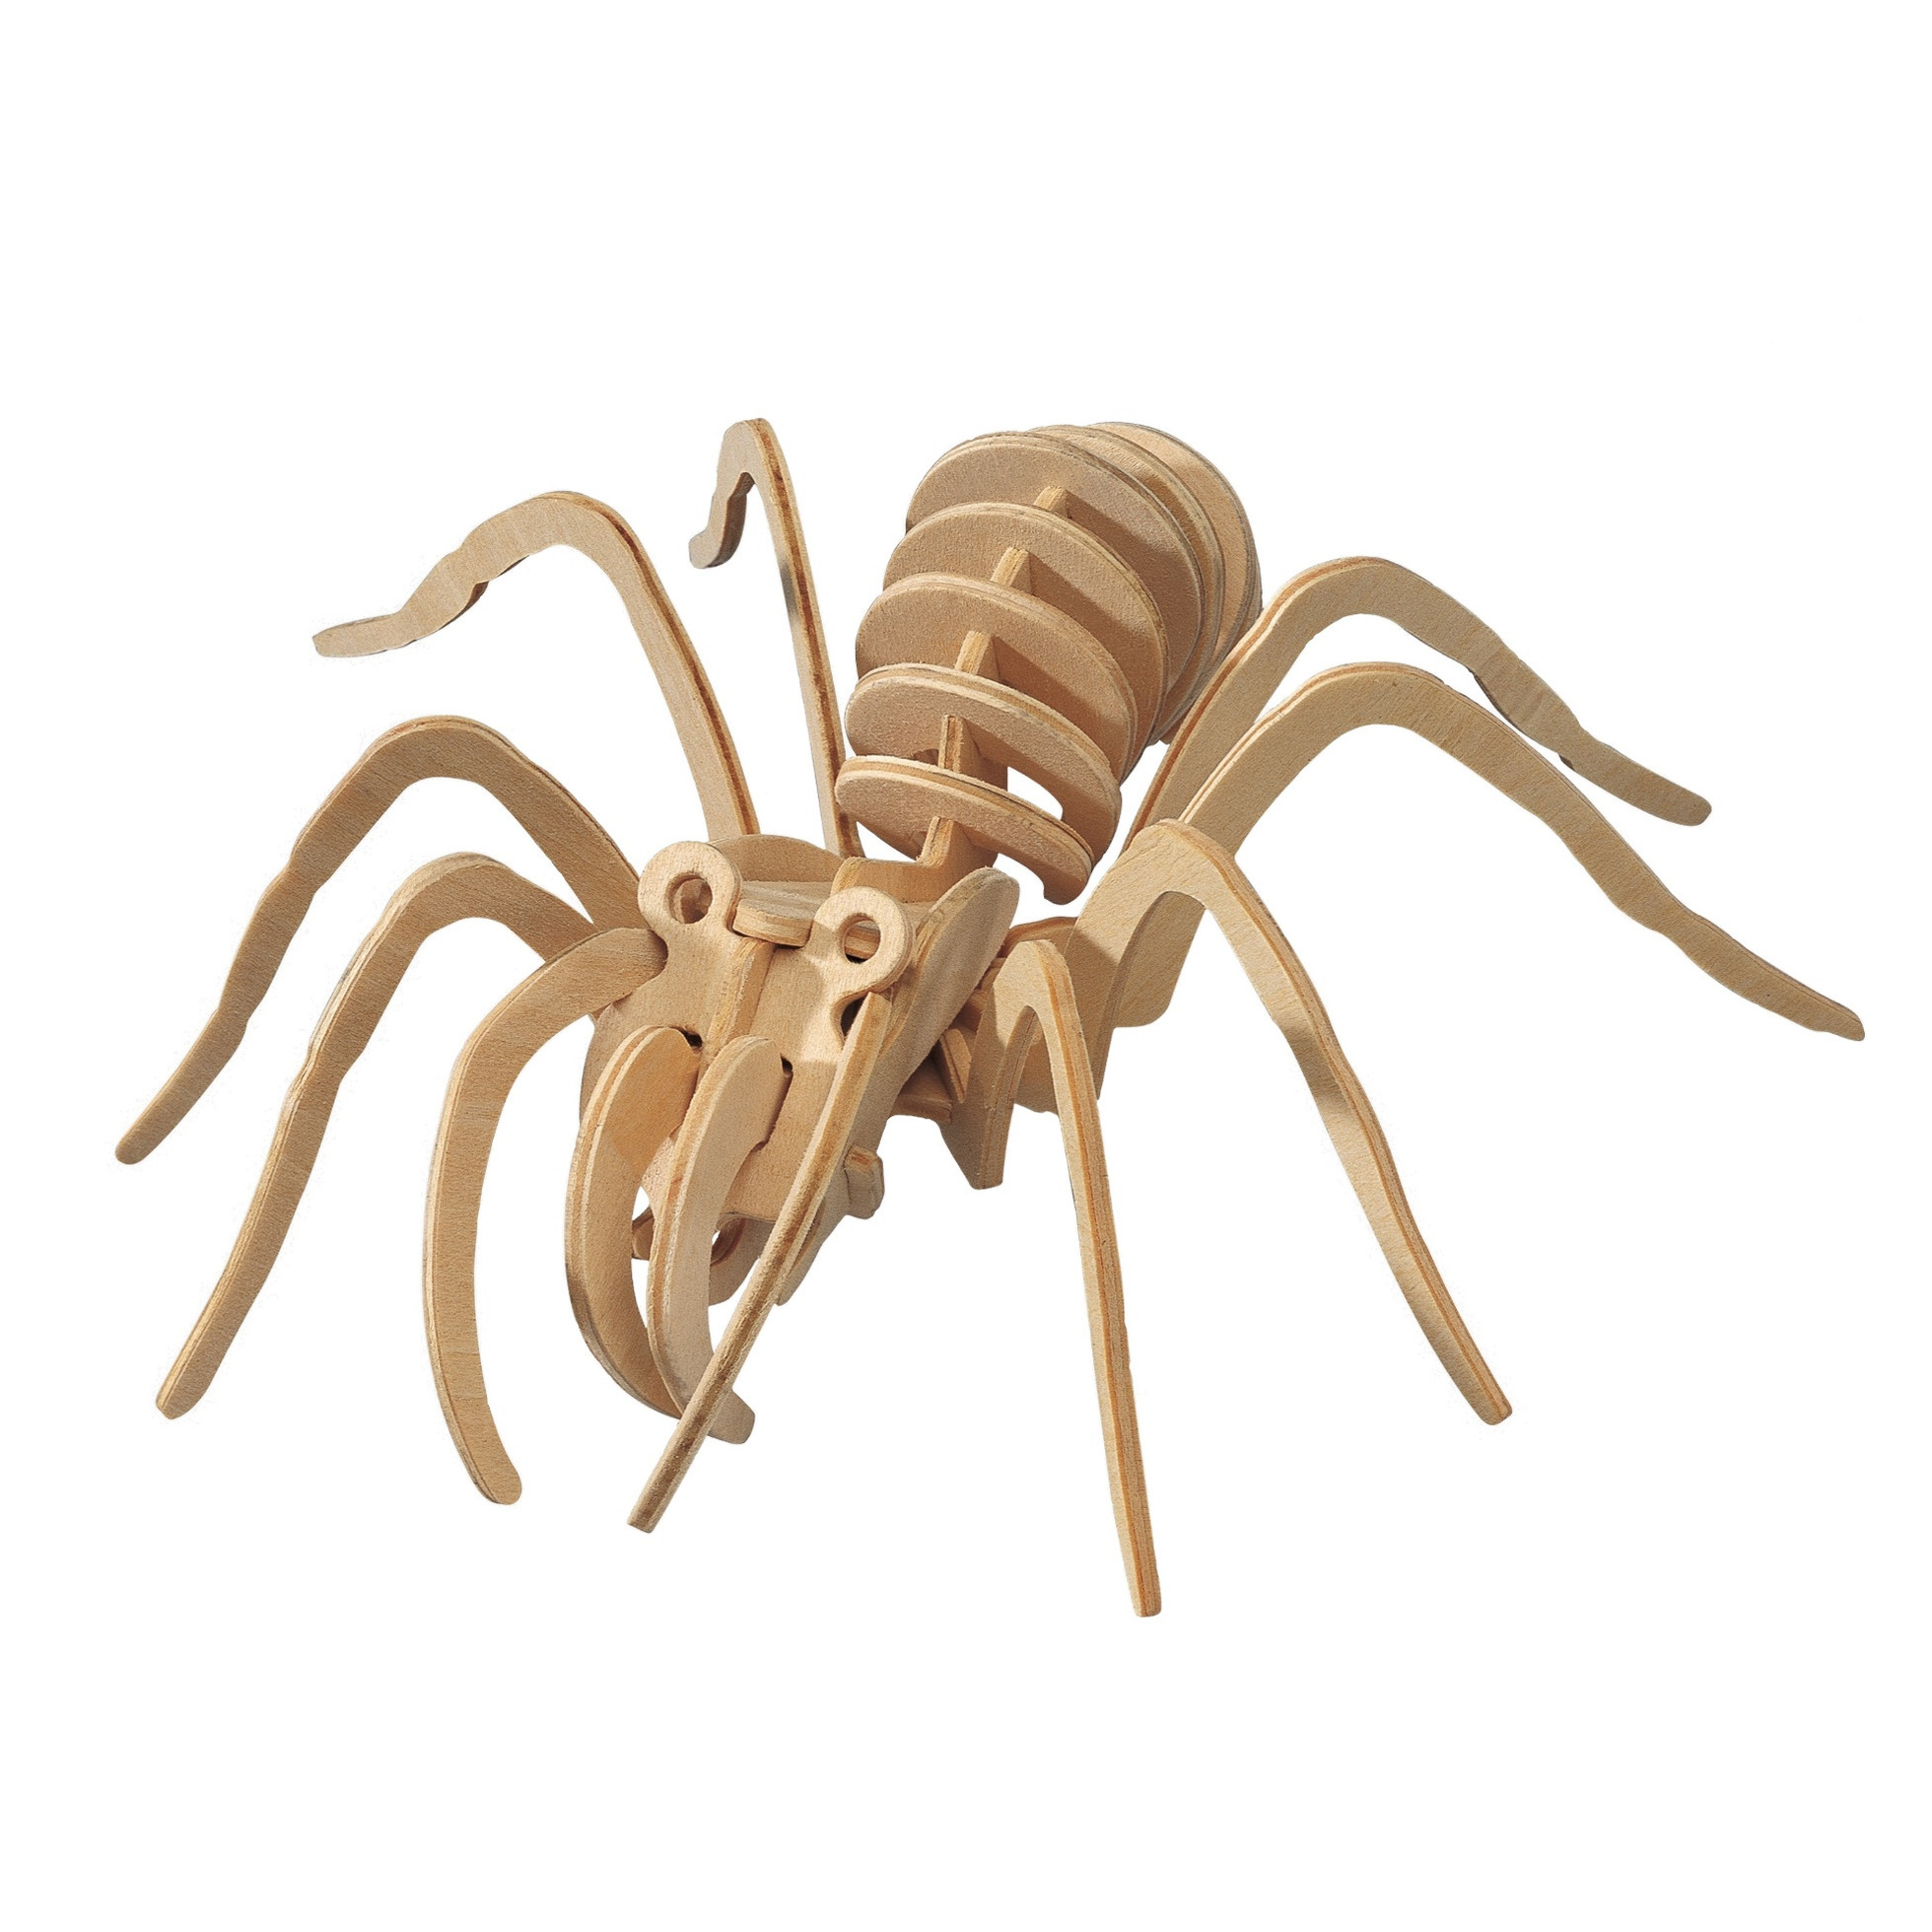 Houten 3D puzzel tarantula spin 23 cm